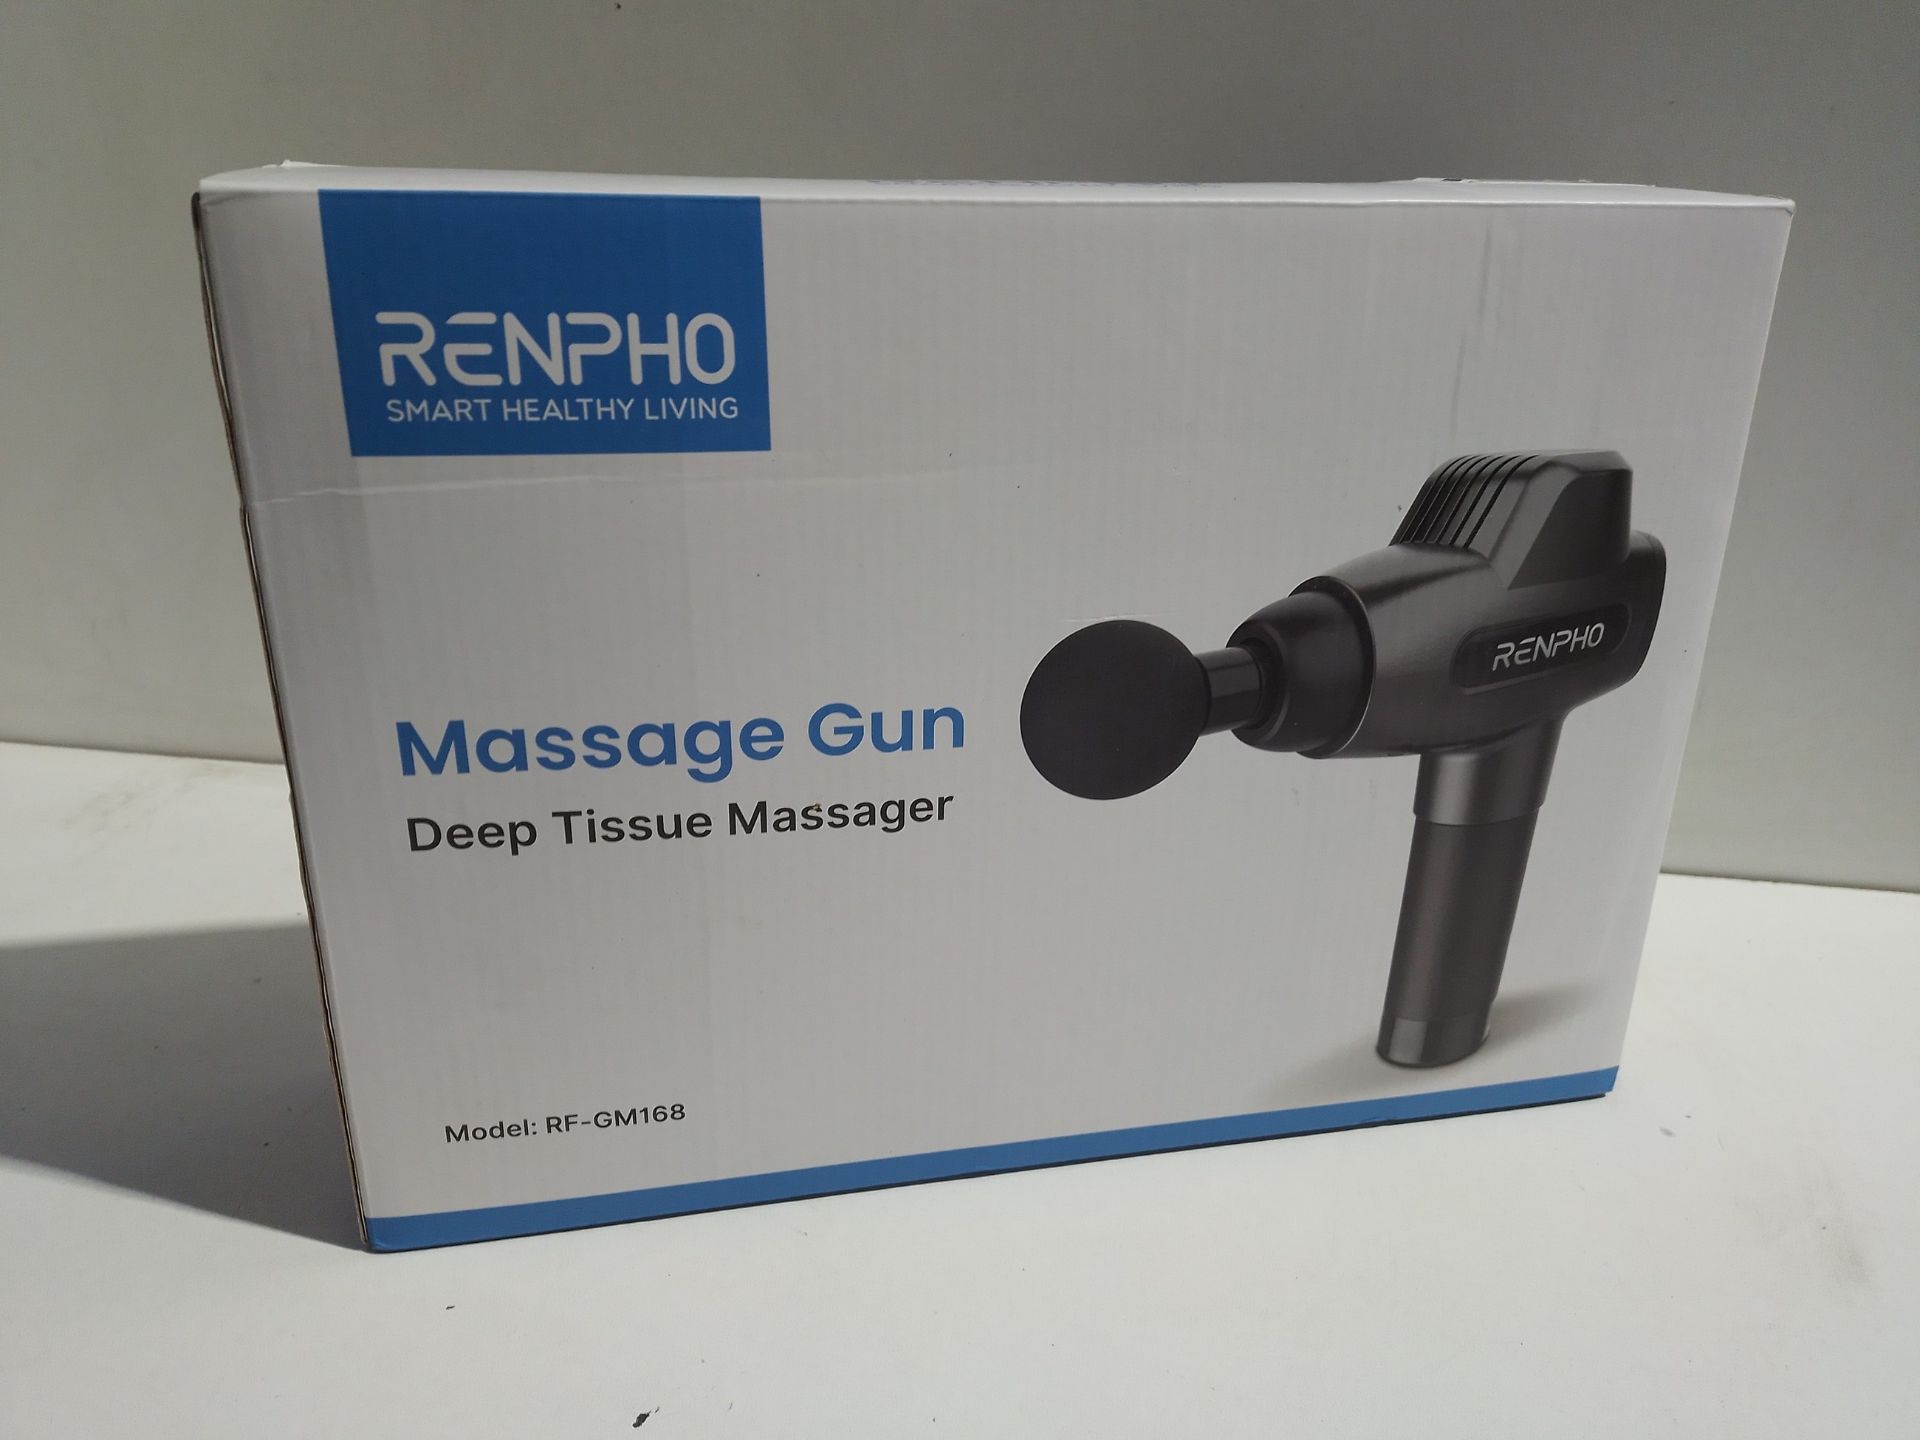 RRP £49.91 Massage Gun - Image 2 of 2